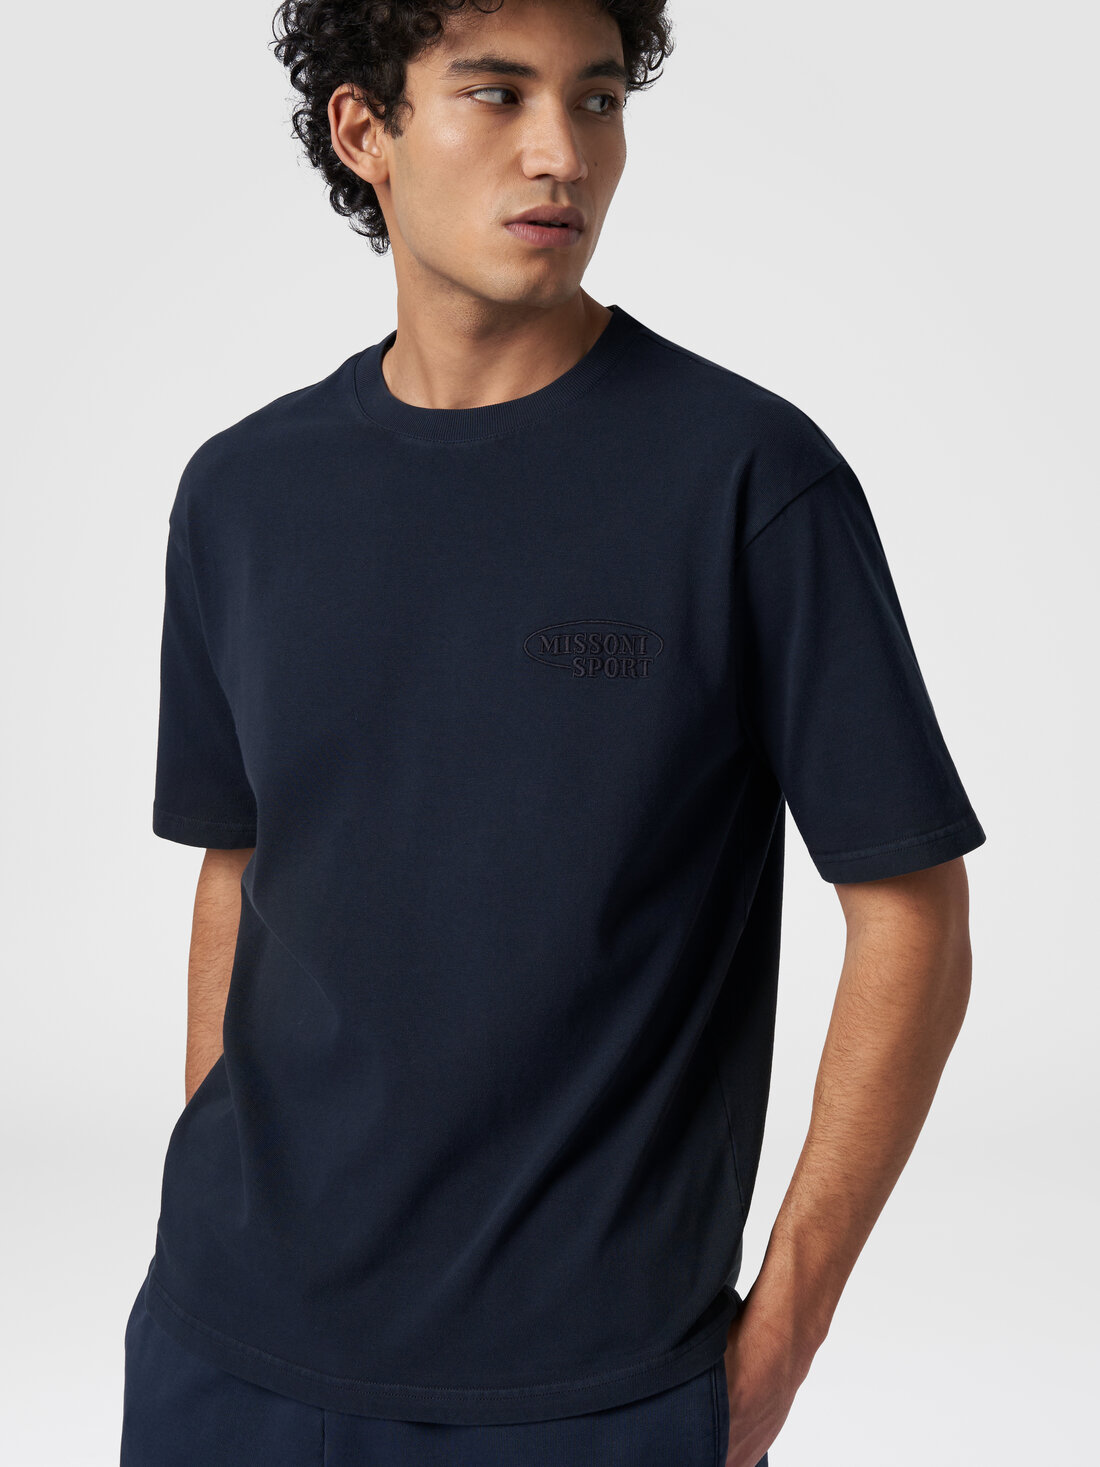 Camiseta de cuello redondo de algodón con logotipo, Azul Marino  - TS24SL00BJ00GYS72EU - 3